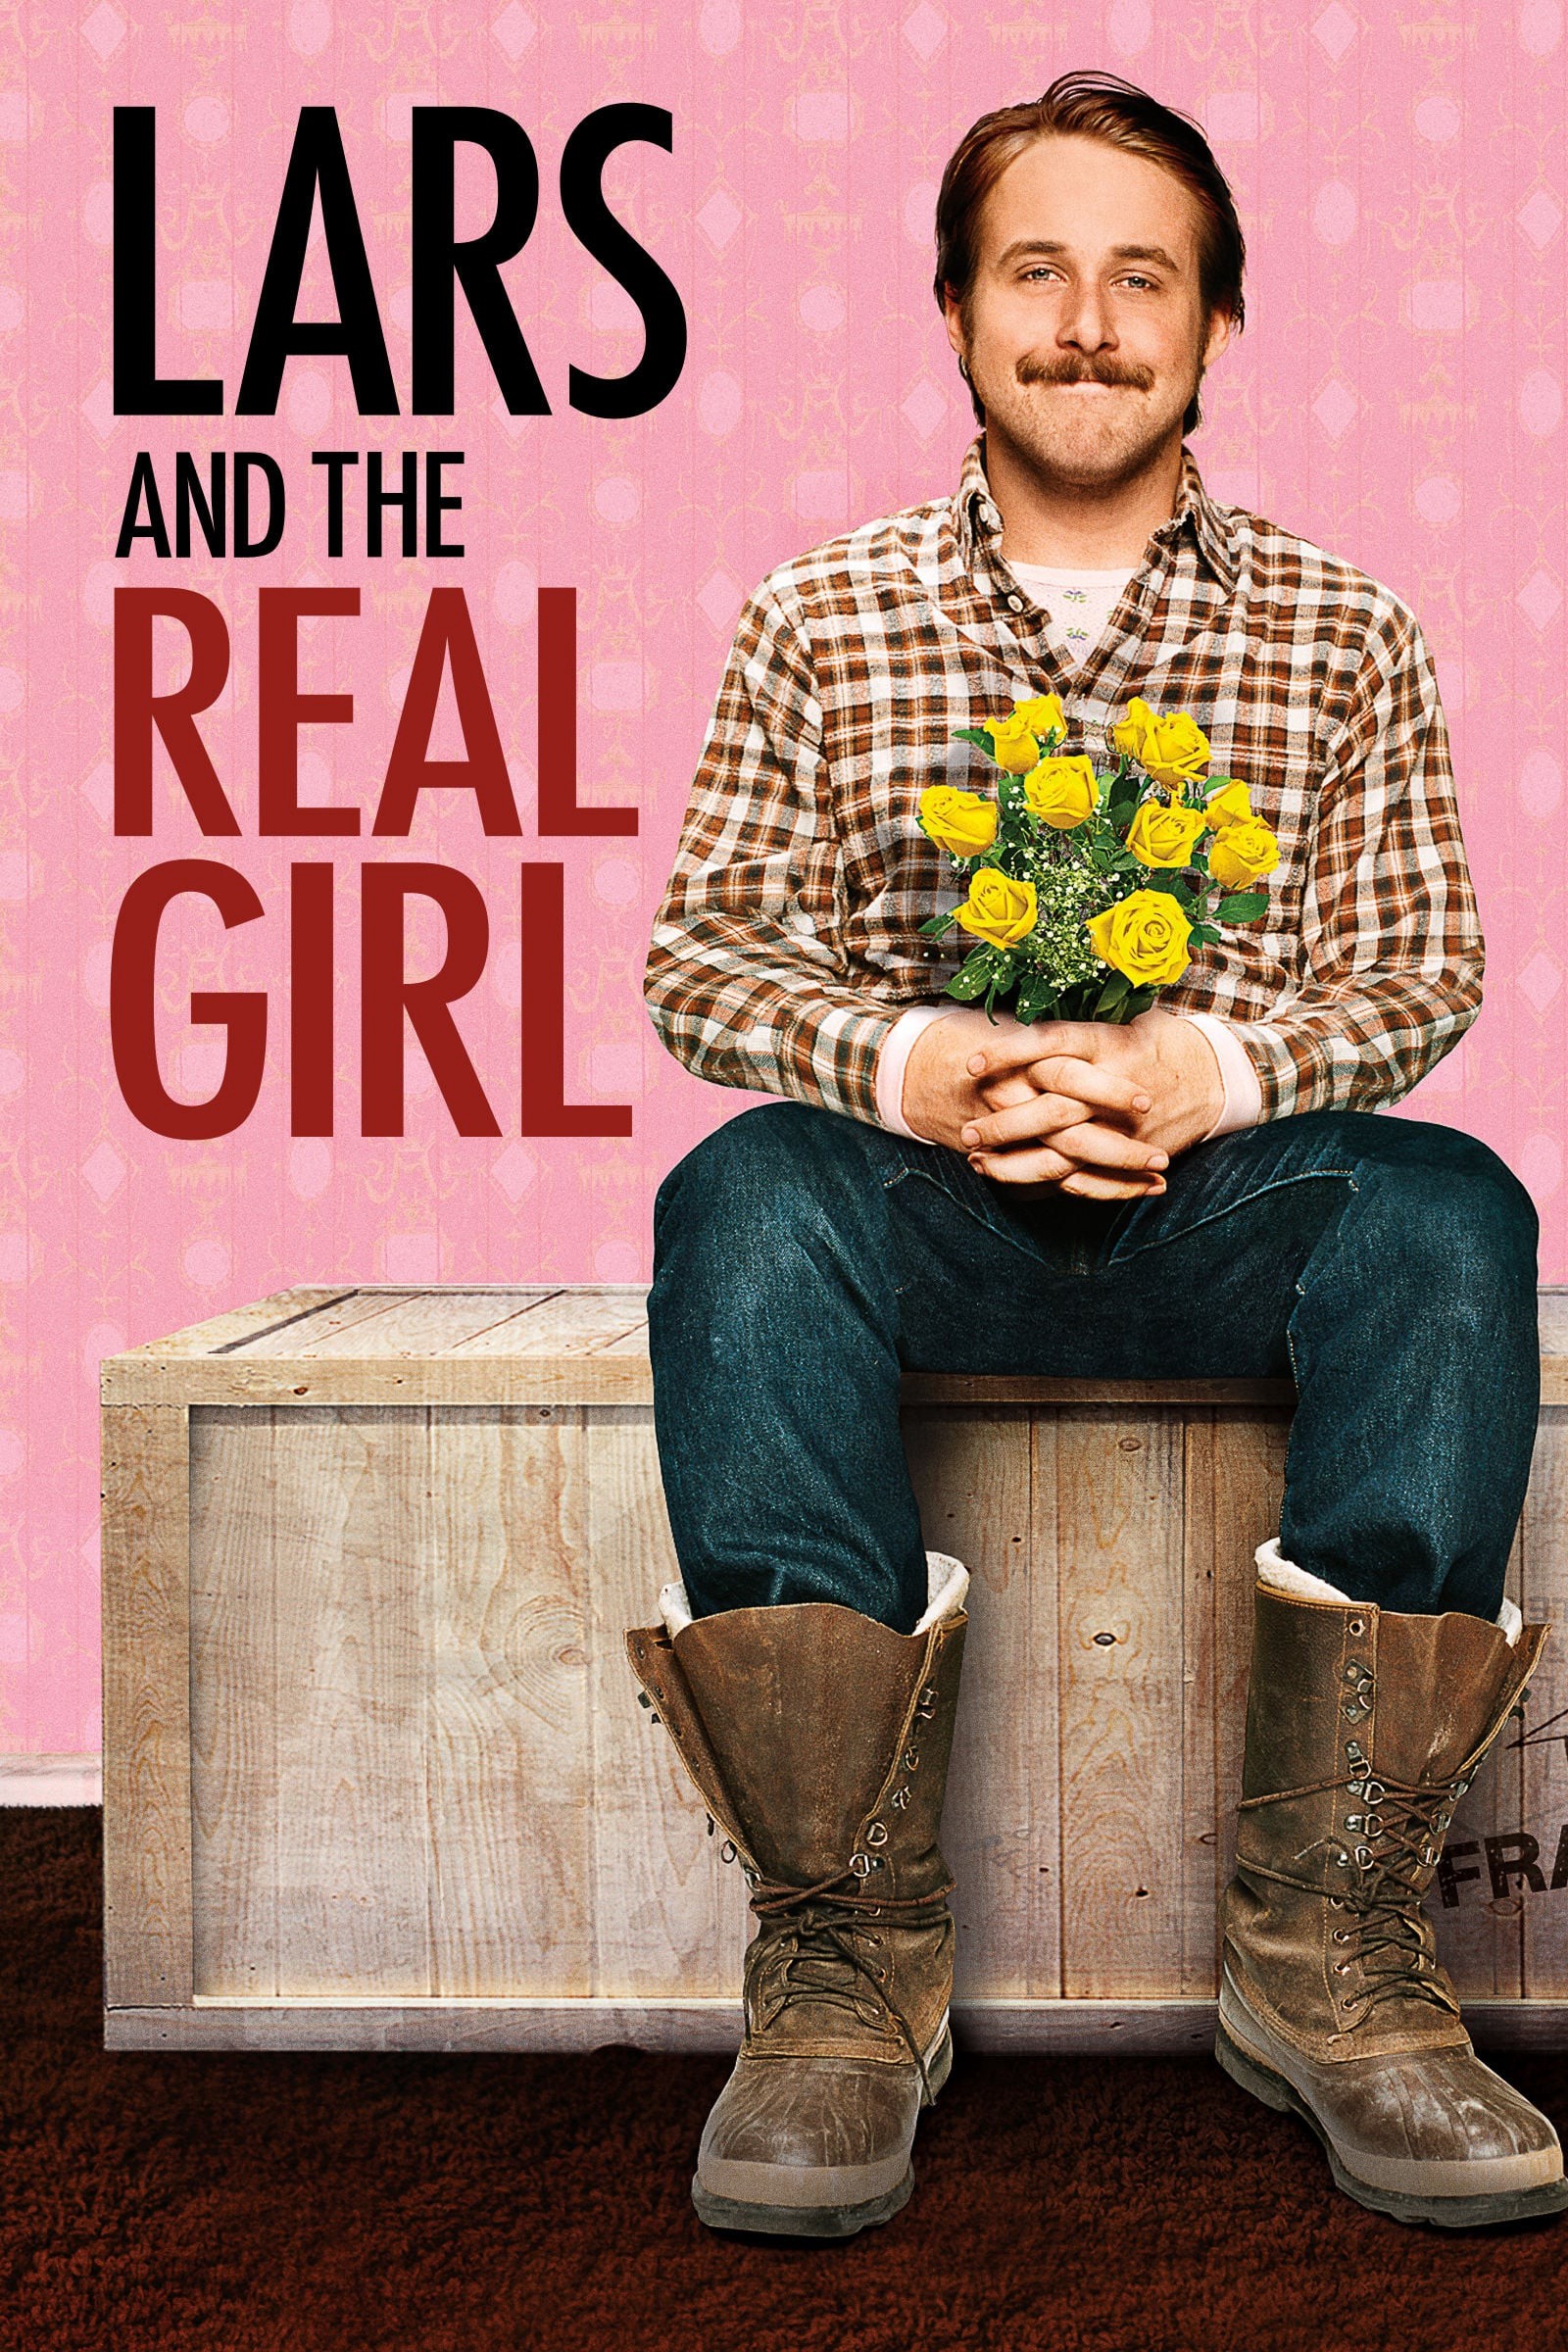 Lars and the Real Girl - Lars and the Real Girl (2007)